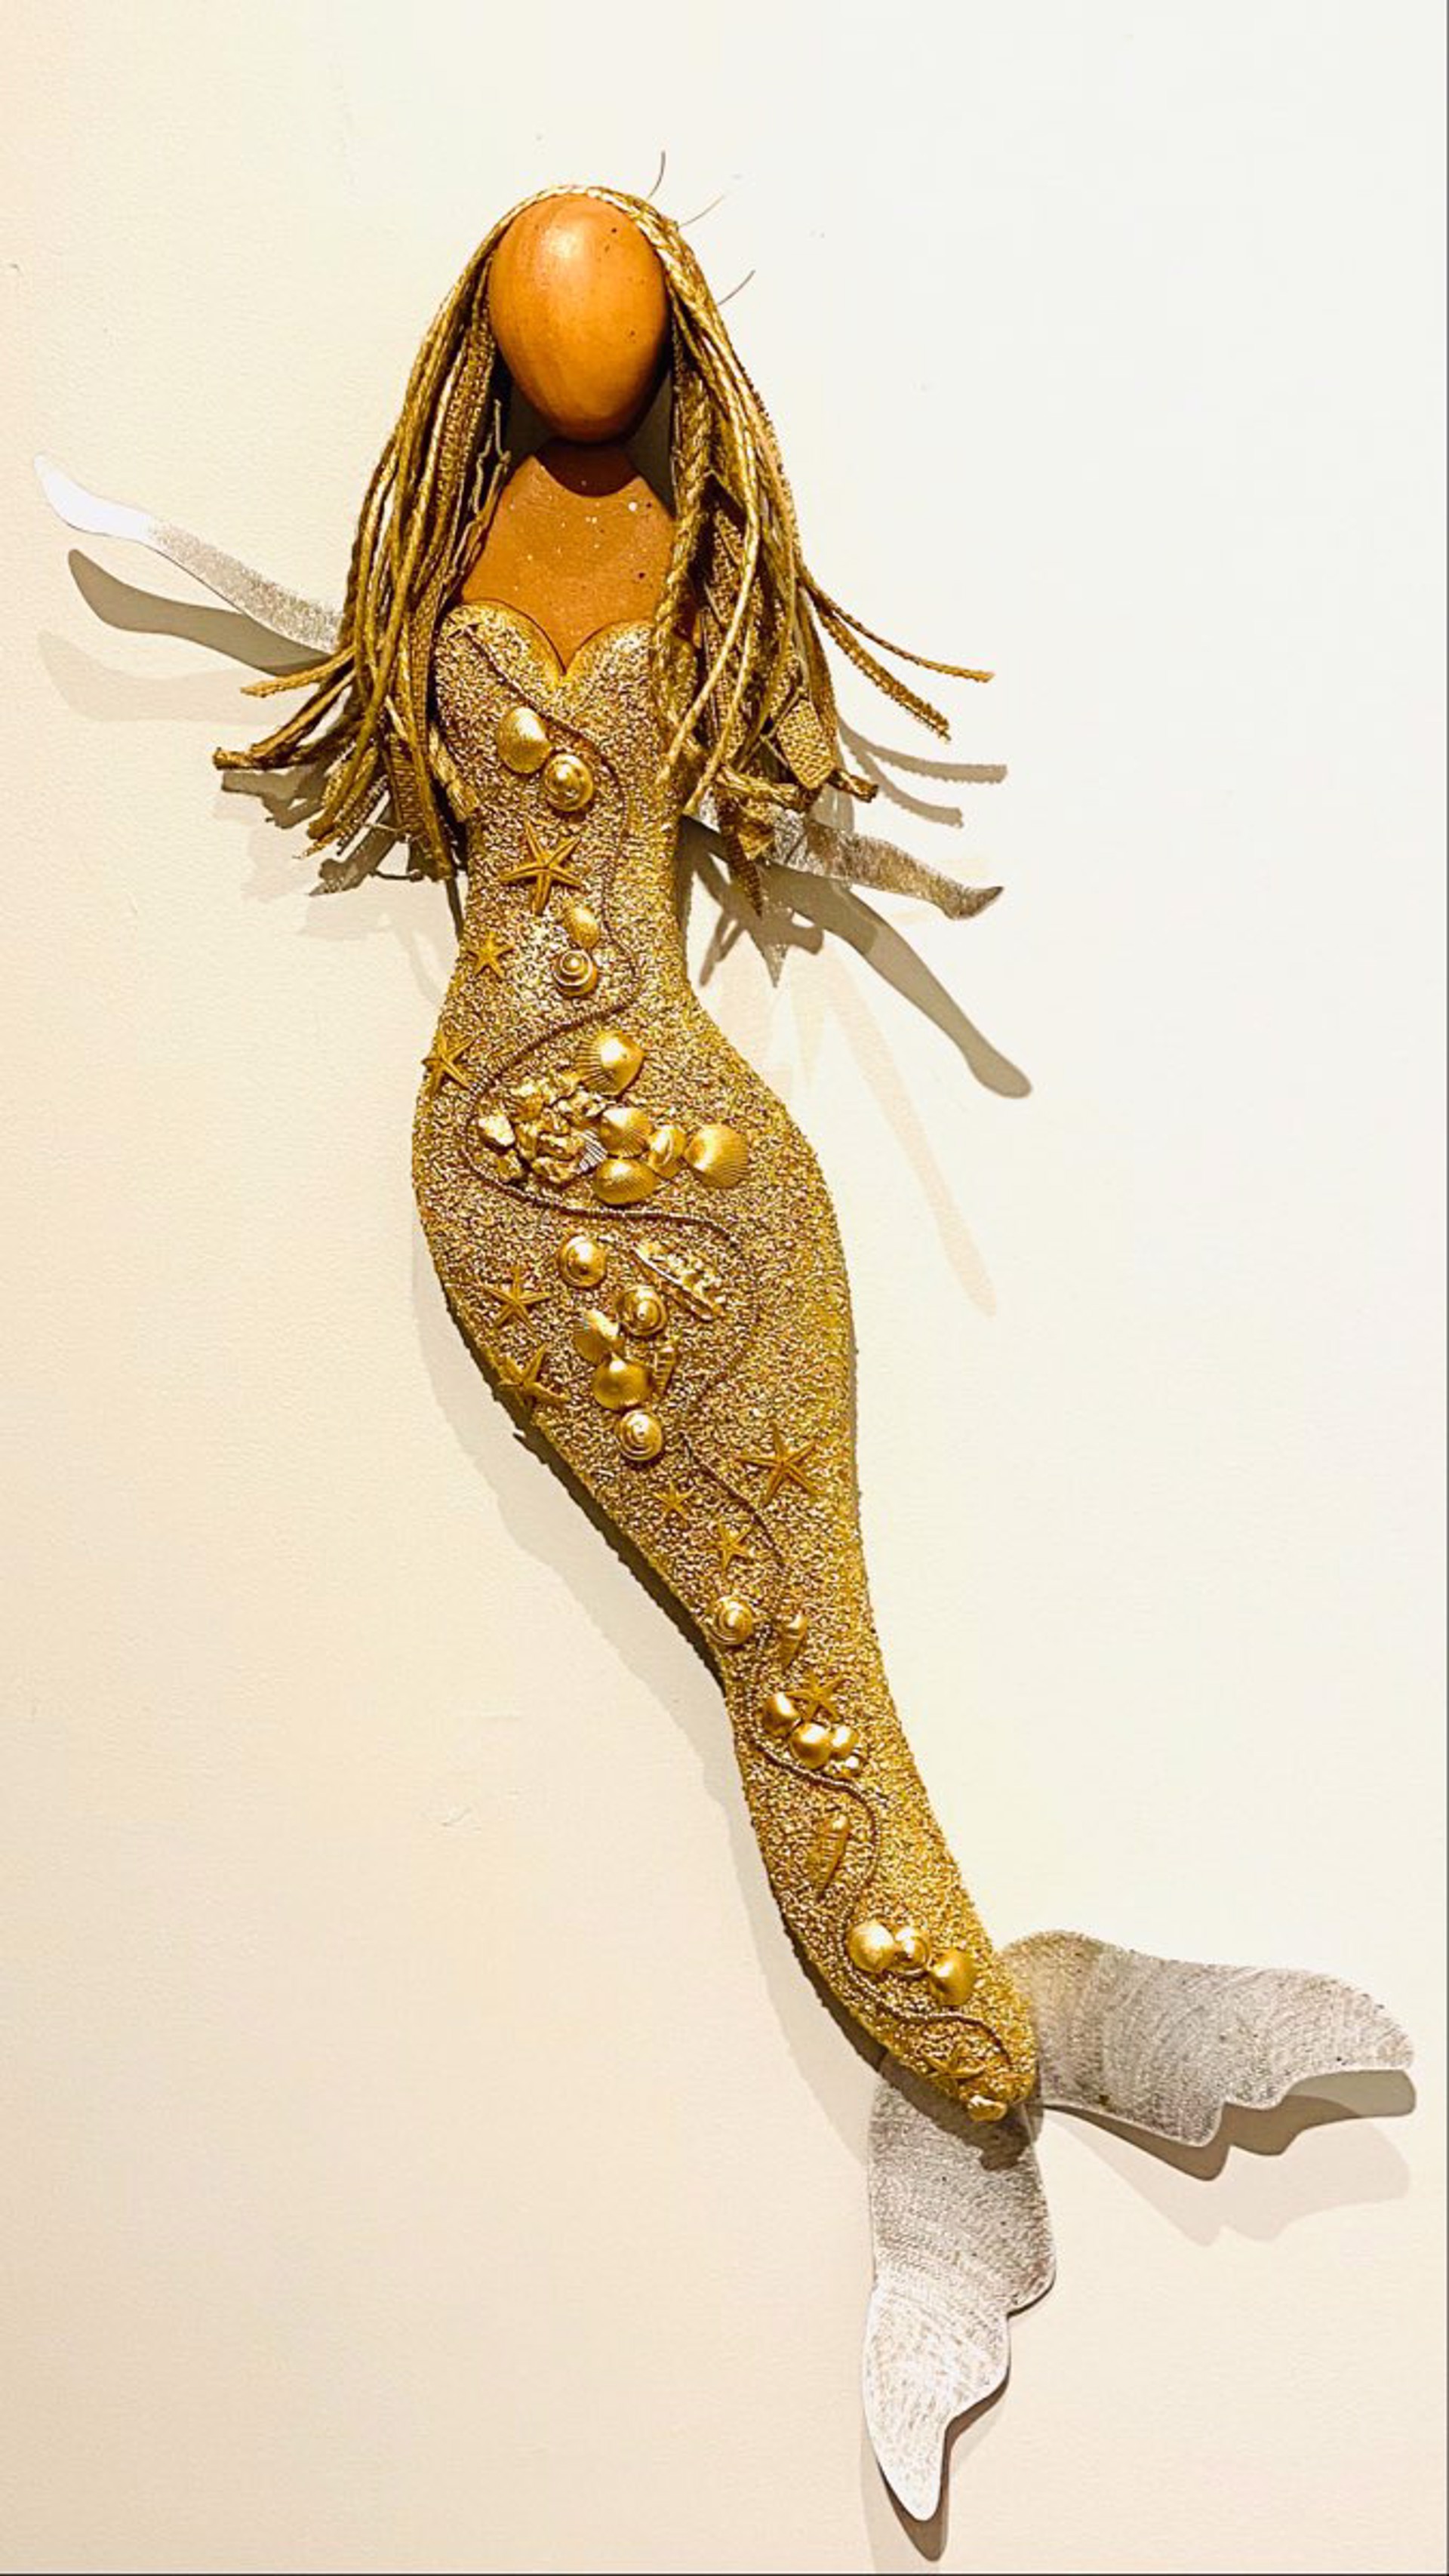 JW22-85 "Golden Girl" Mermaid by Jo Watson